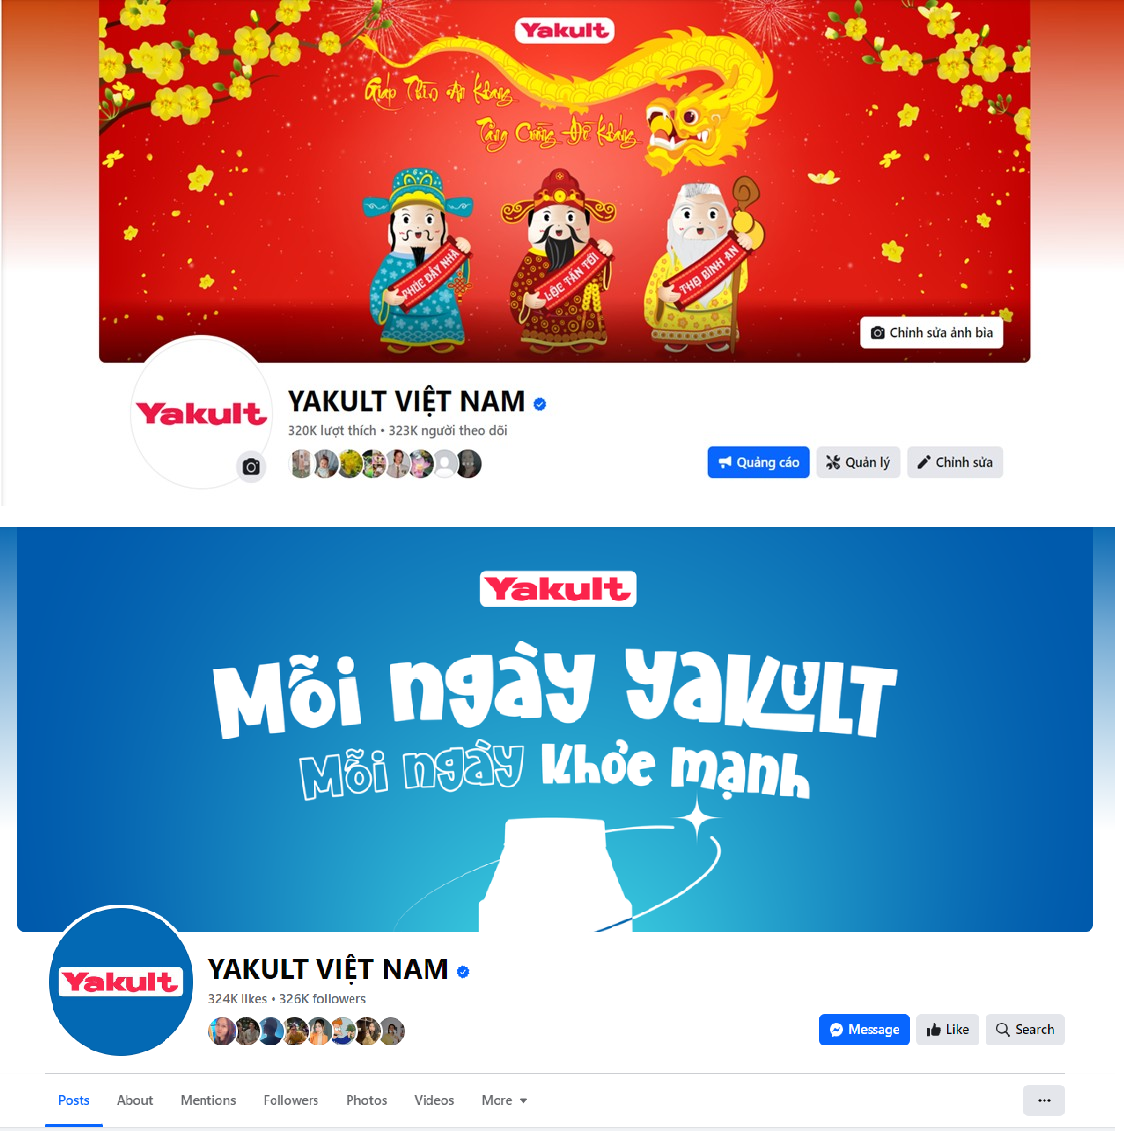 Yakult bất ngờ thay đổi hình ảnh sang sắc xanh lạ lẫm (Nguồn: Fanpage Yakult Việt Nam)